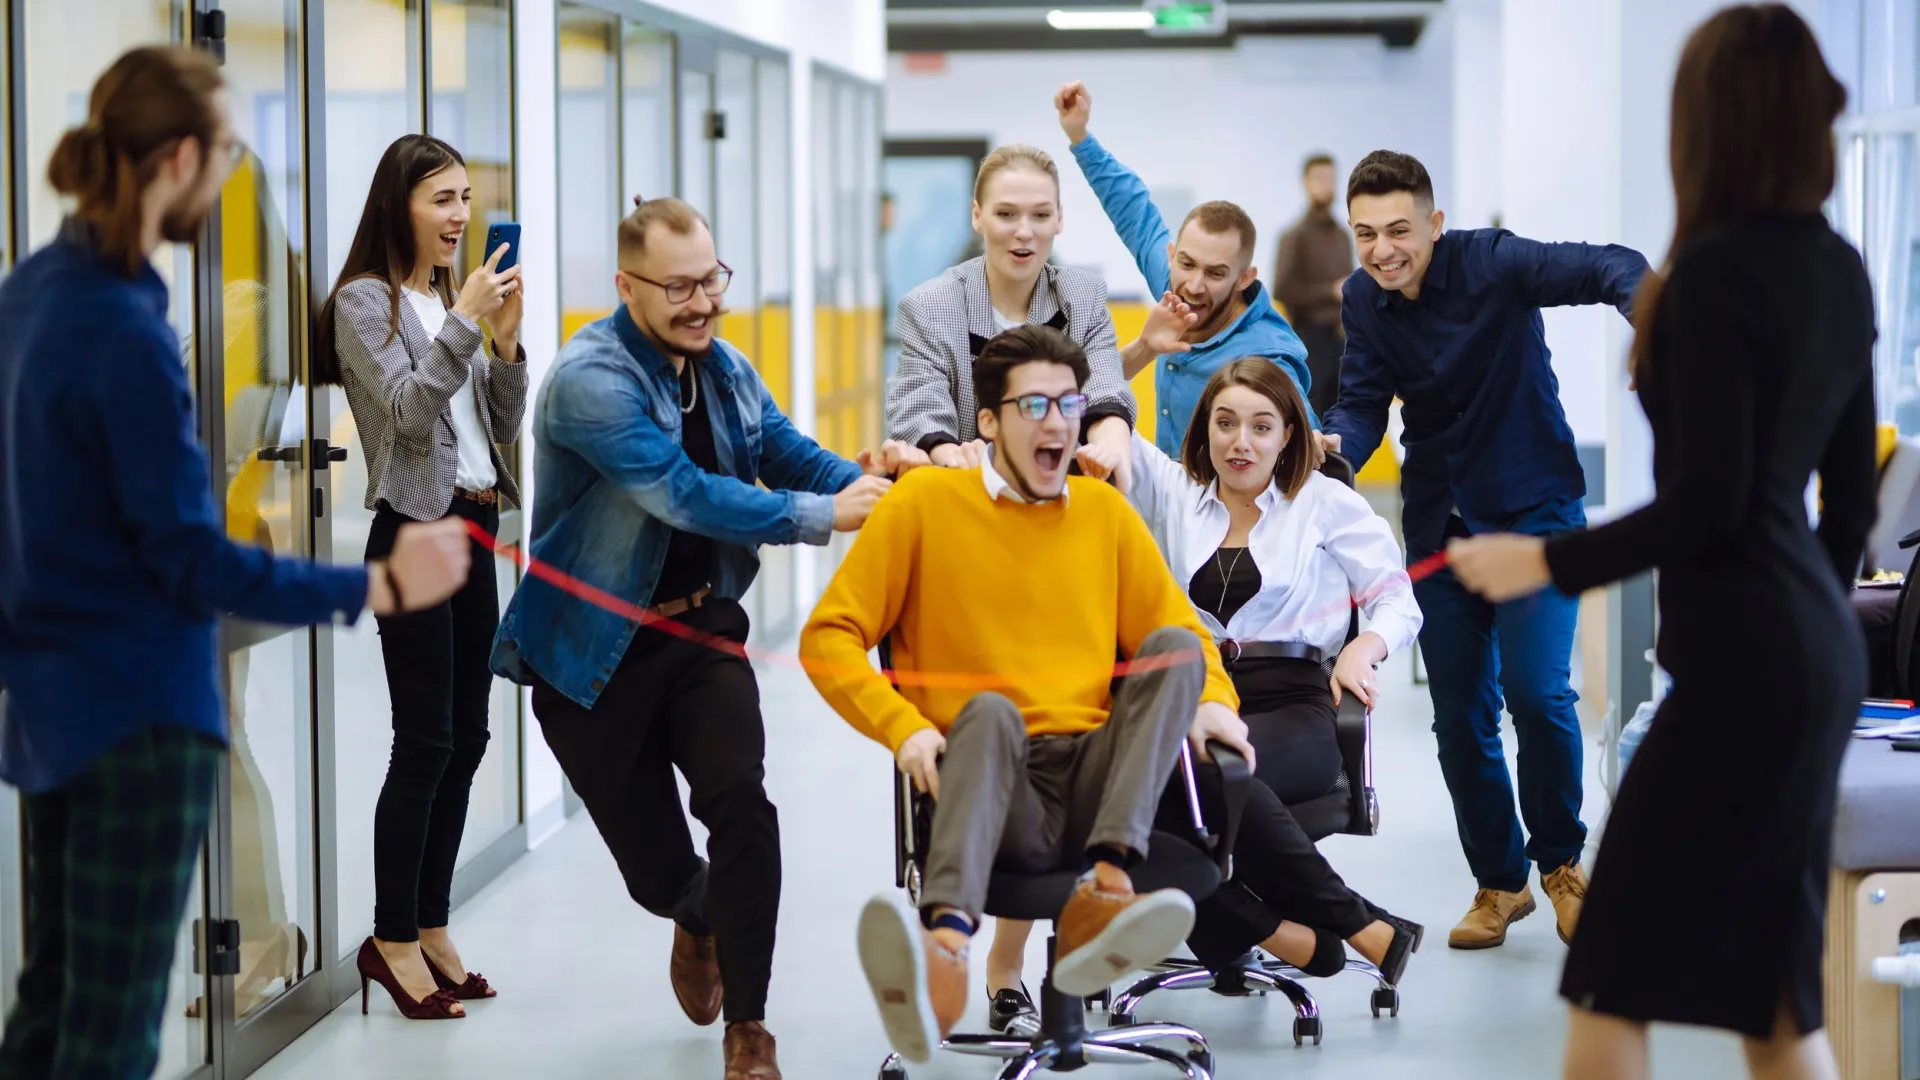 Офисных работников в День дурака сплотят гонки на креслах. Фото: maxbelchenko/Shutterstock/Fotodom